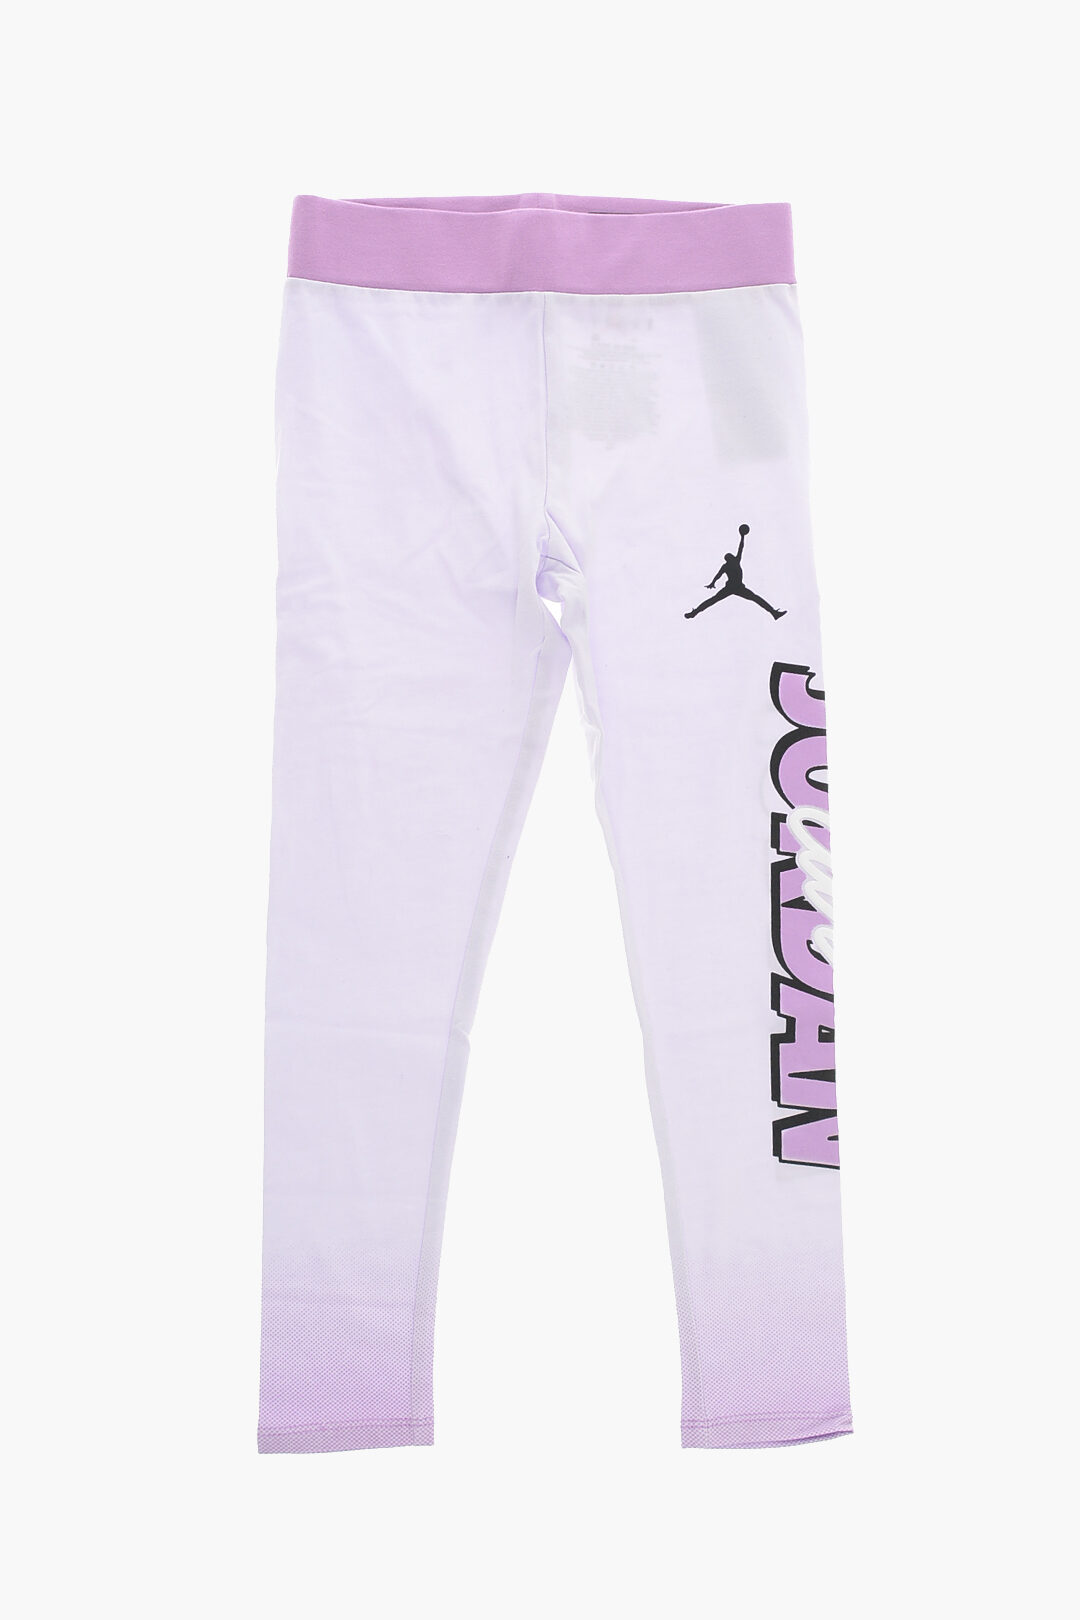 Nike KIDS AIR JORDAN Logo Printed Stretch Cotton Leggings girls - Glamood  Outlet